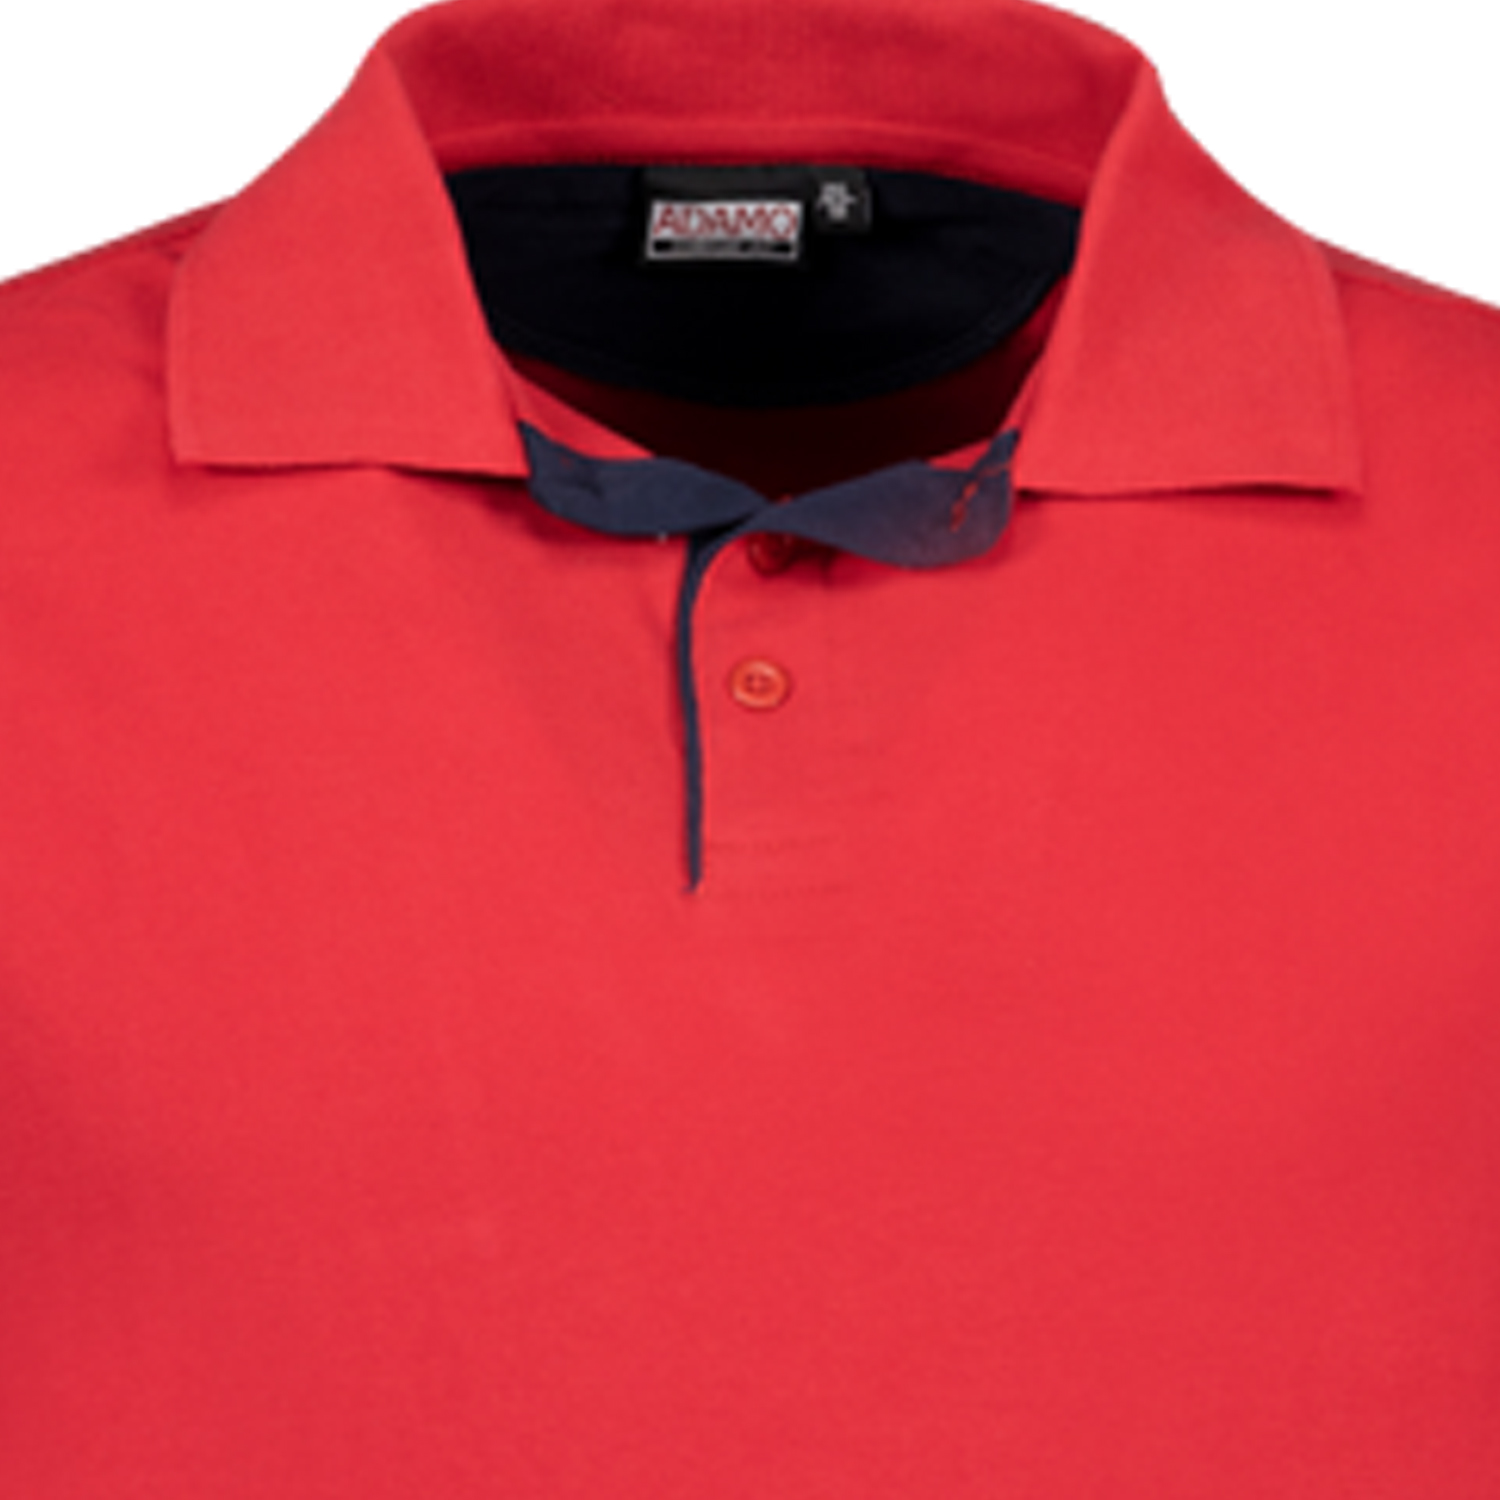 Poloshirt Herren kurzarm in Pique-Qualität Serie Pablo COMFORT FIT von Adamo in rot bis Übergröße 12XL